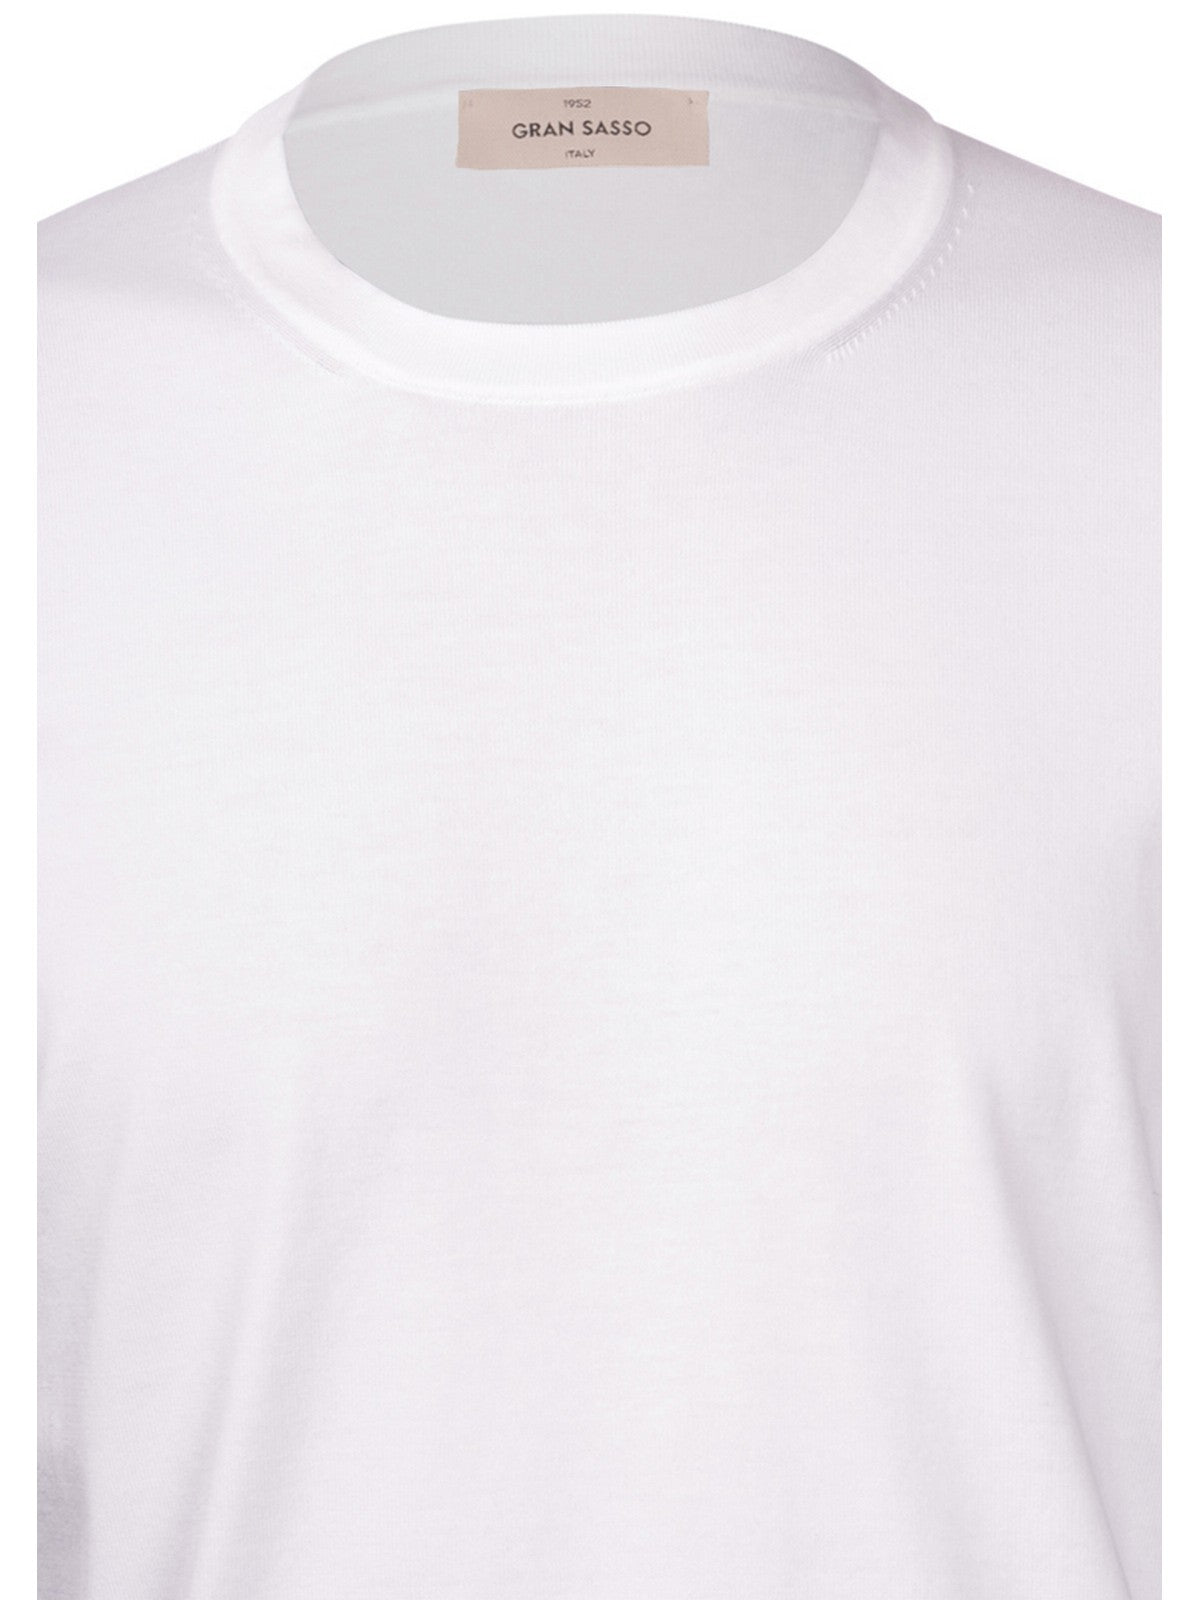 GRAN SASSO T-Shirt e Polo Uomo  43168/21820 001 Bianco